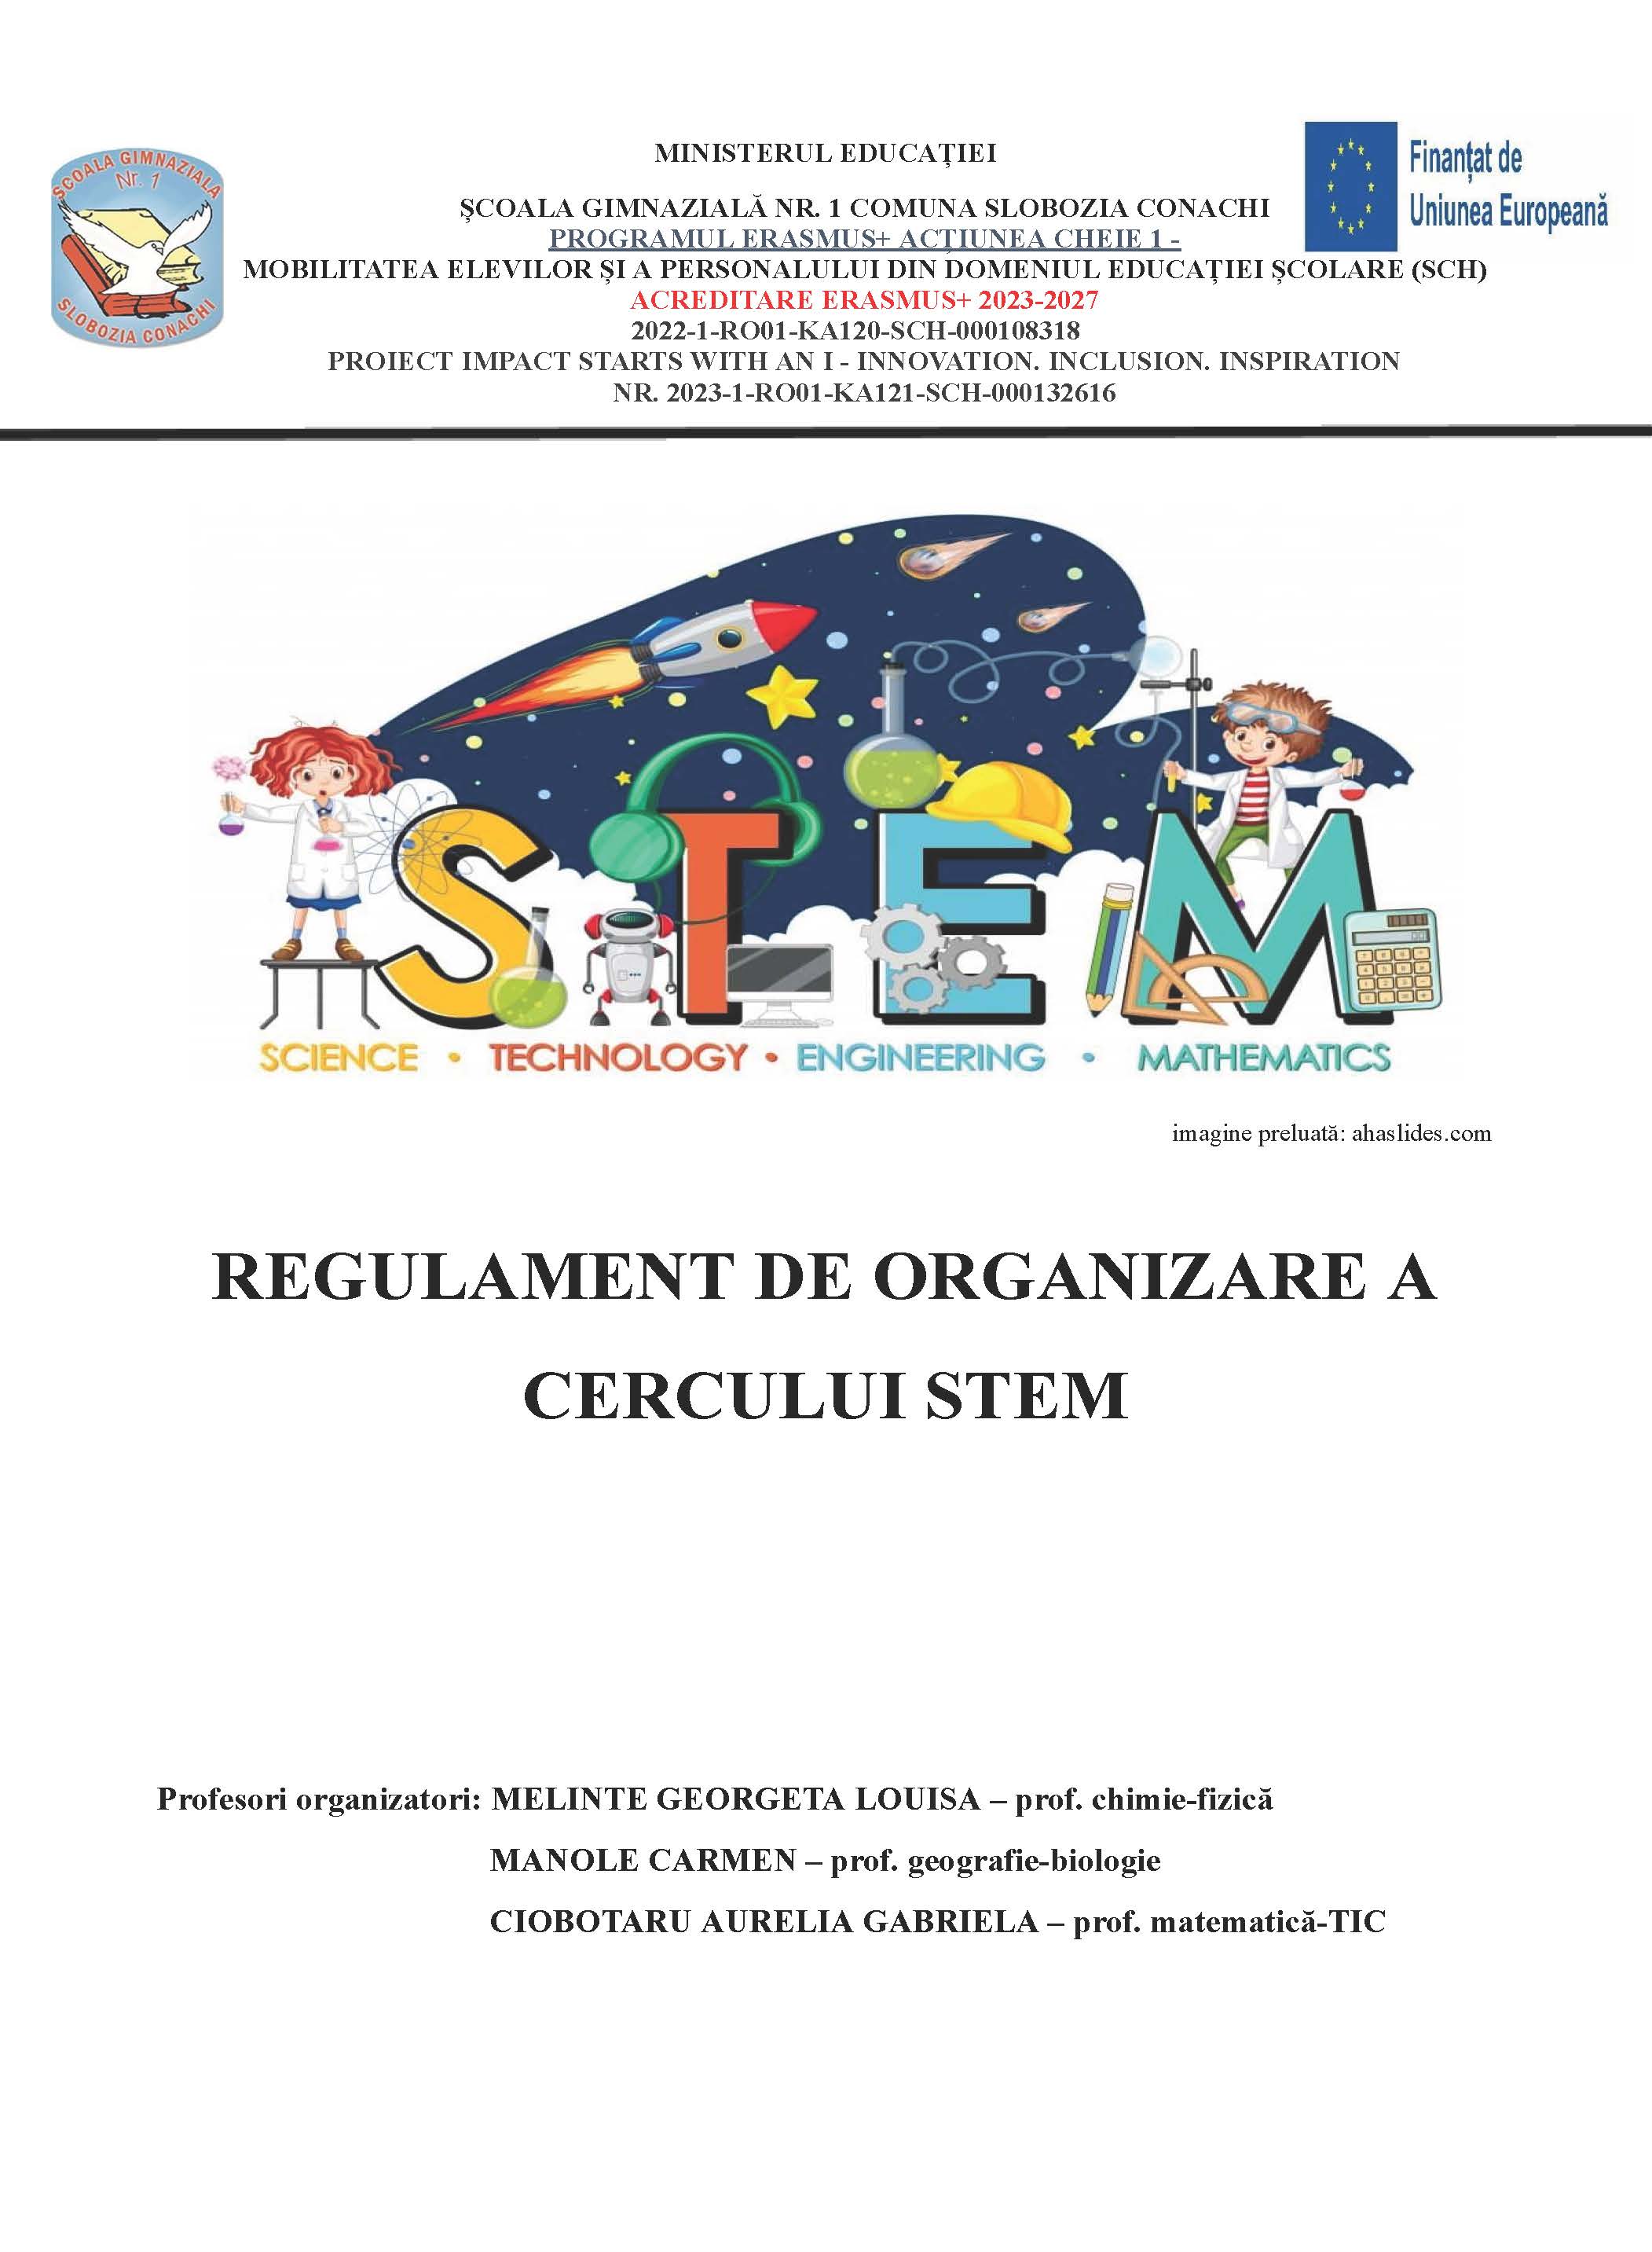 REGULAMENT DE ORGANIZARE A CERCULUI STEM.docx 1 Page 1